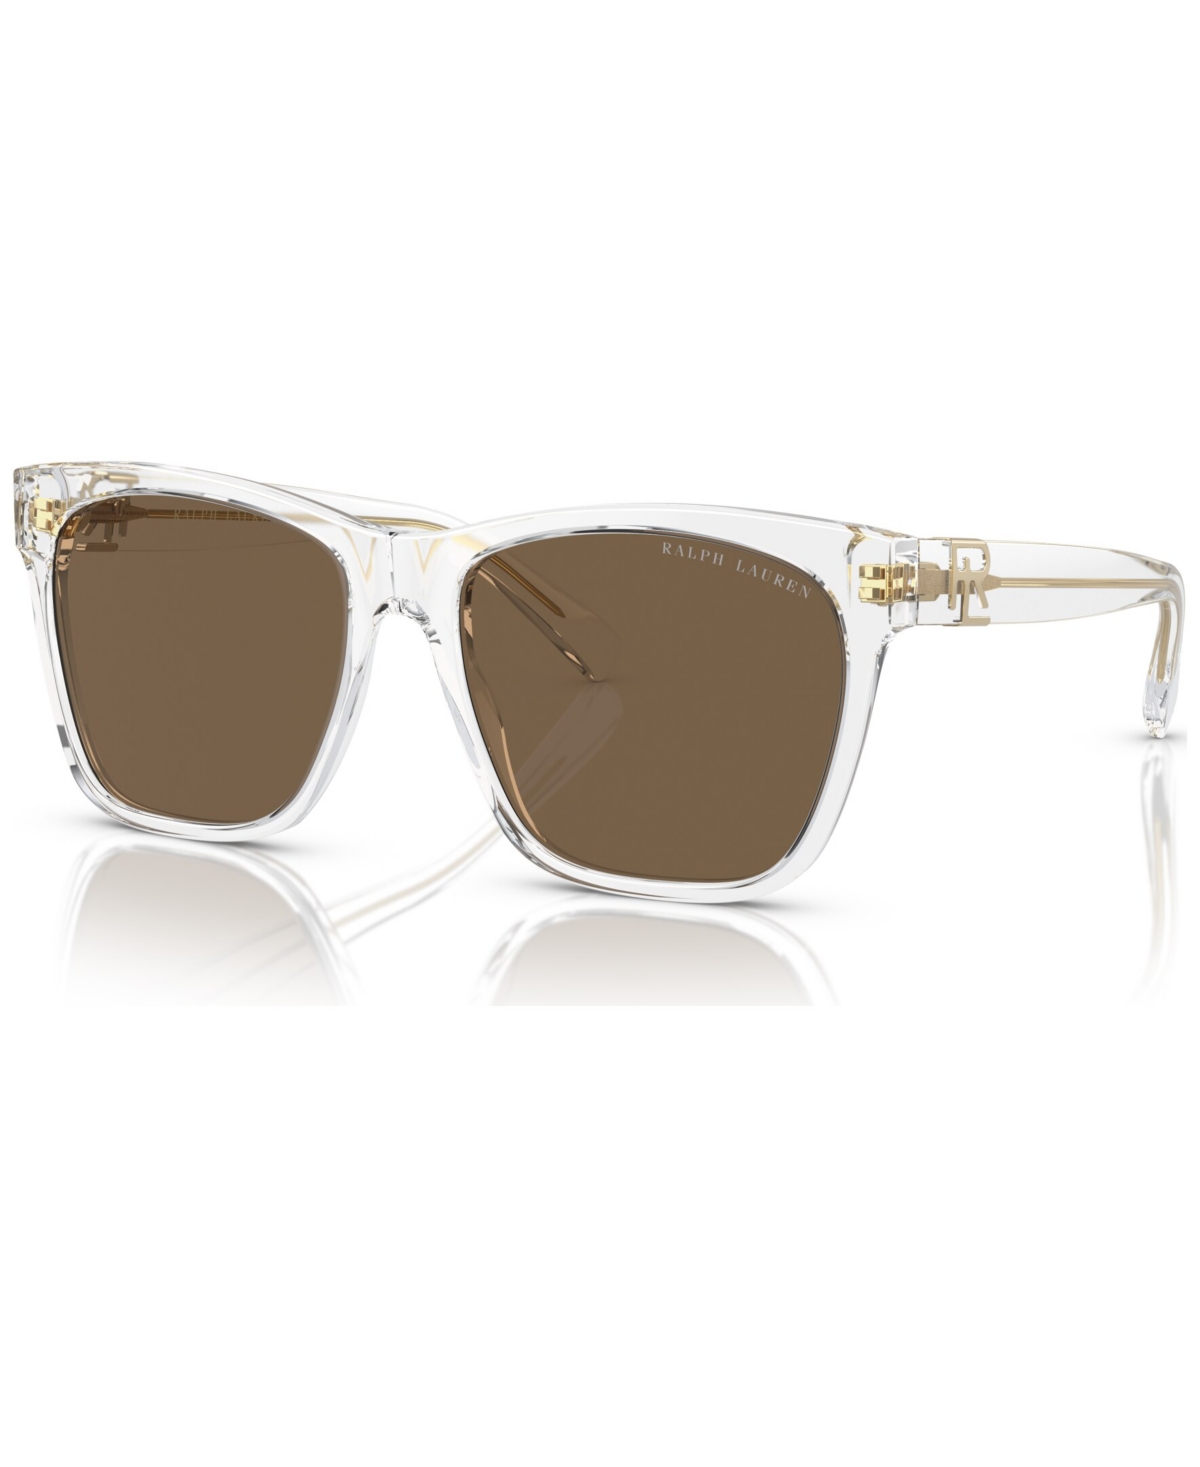 Ralph Lauren Women's Sunglasses, The Ricky Ii In Gradient Brown